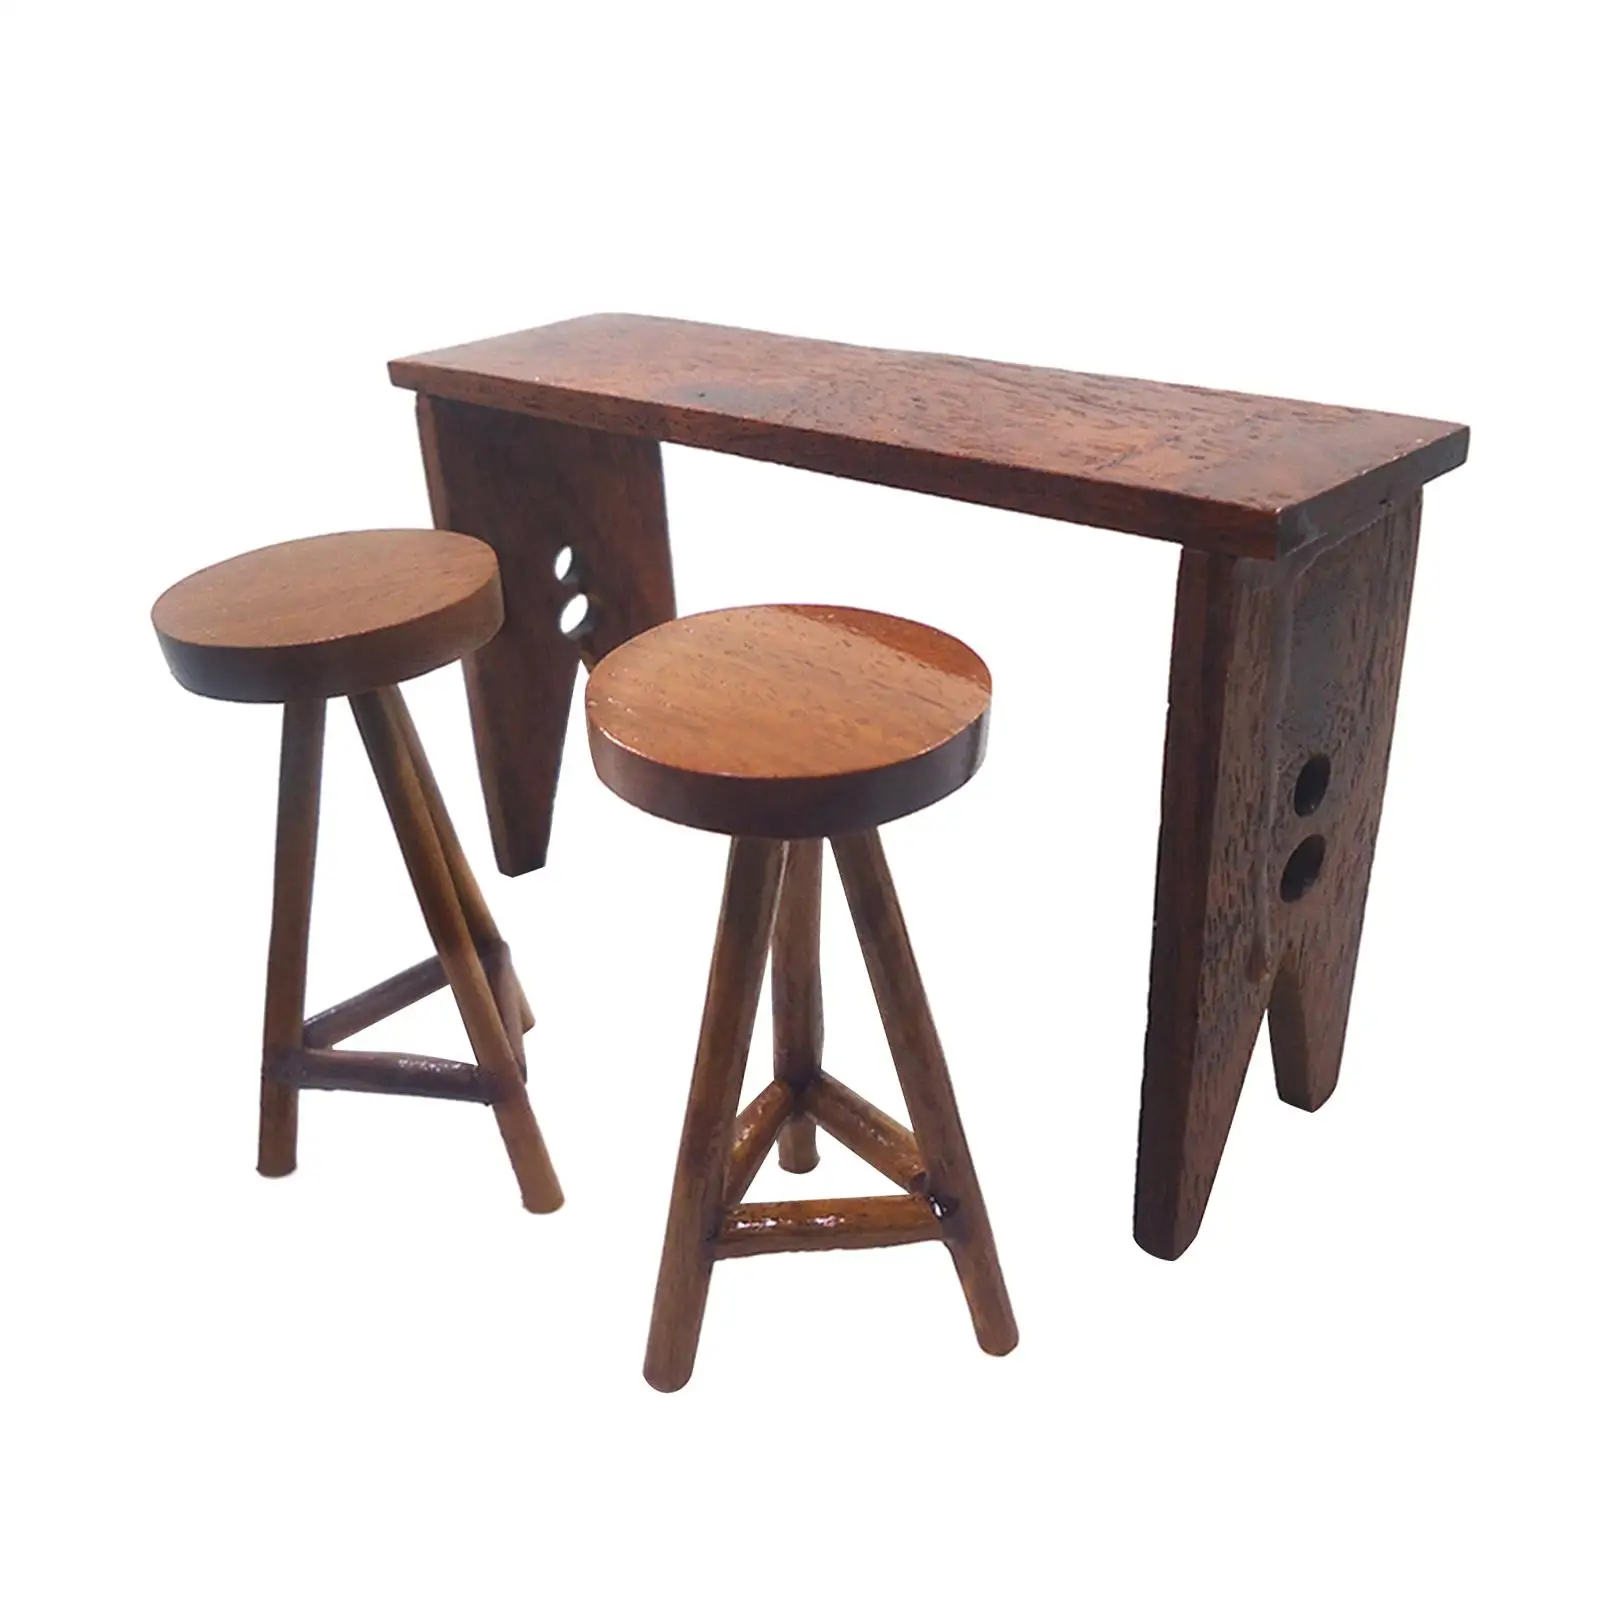 Miniature Bar Table High Chair Decorations 1:12 Desk Stool for Dollhouse DIY